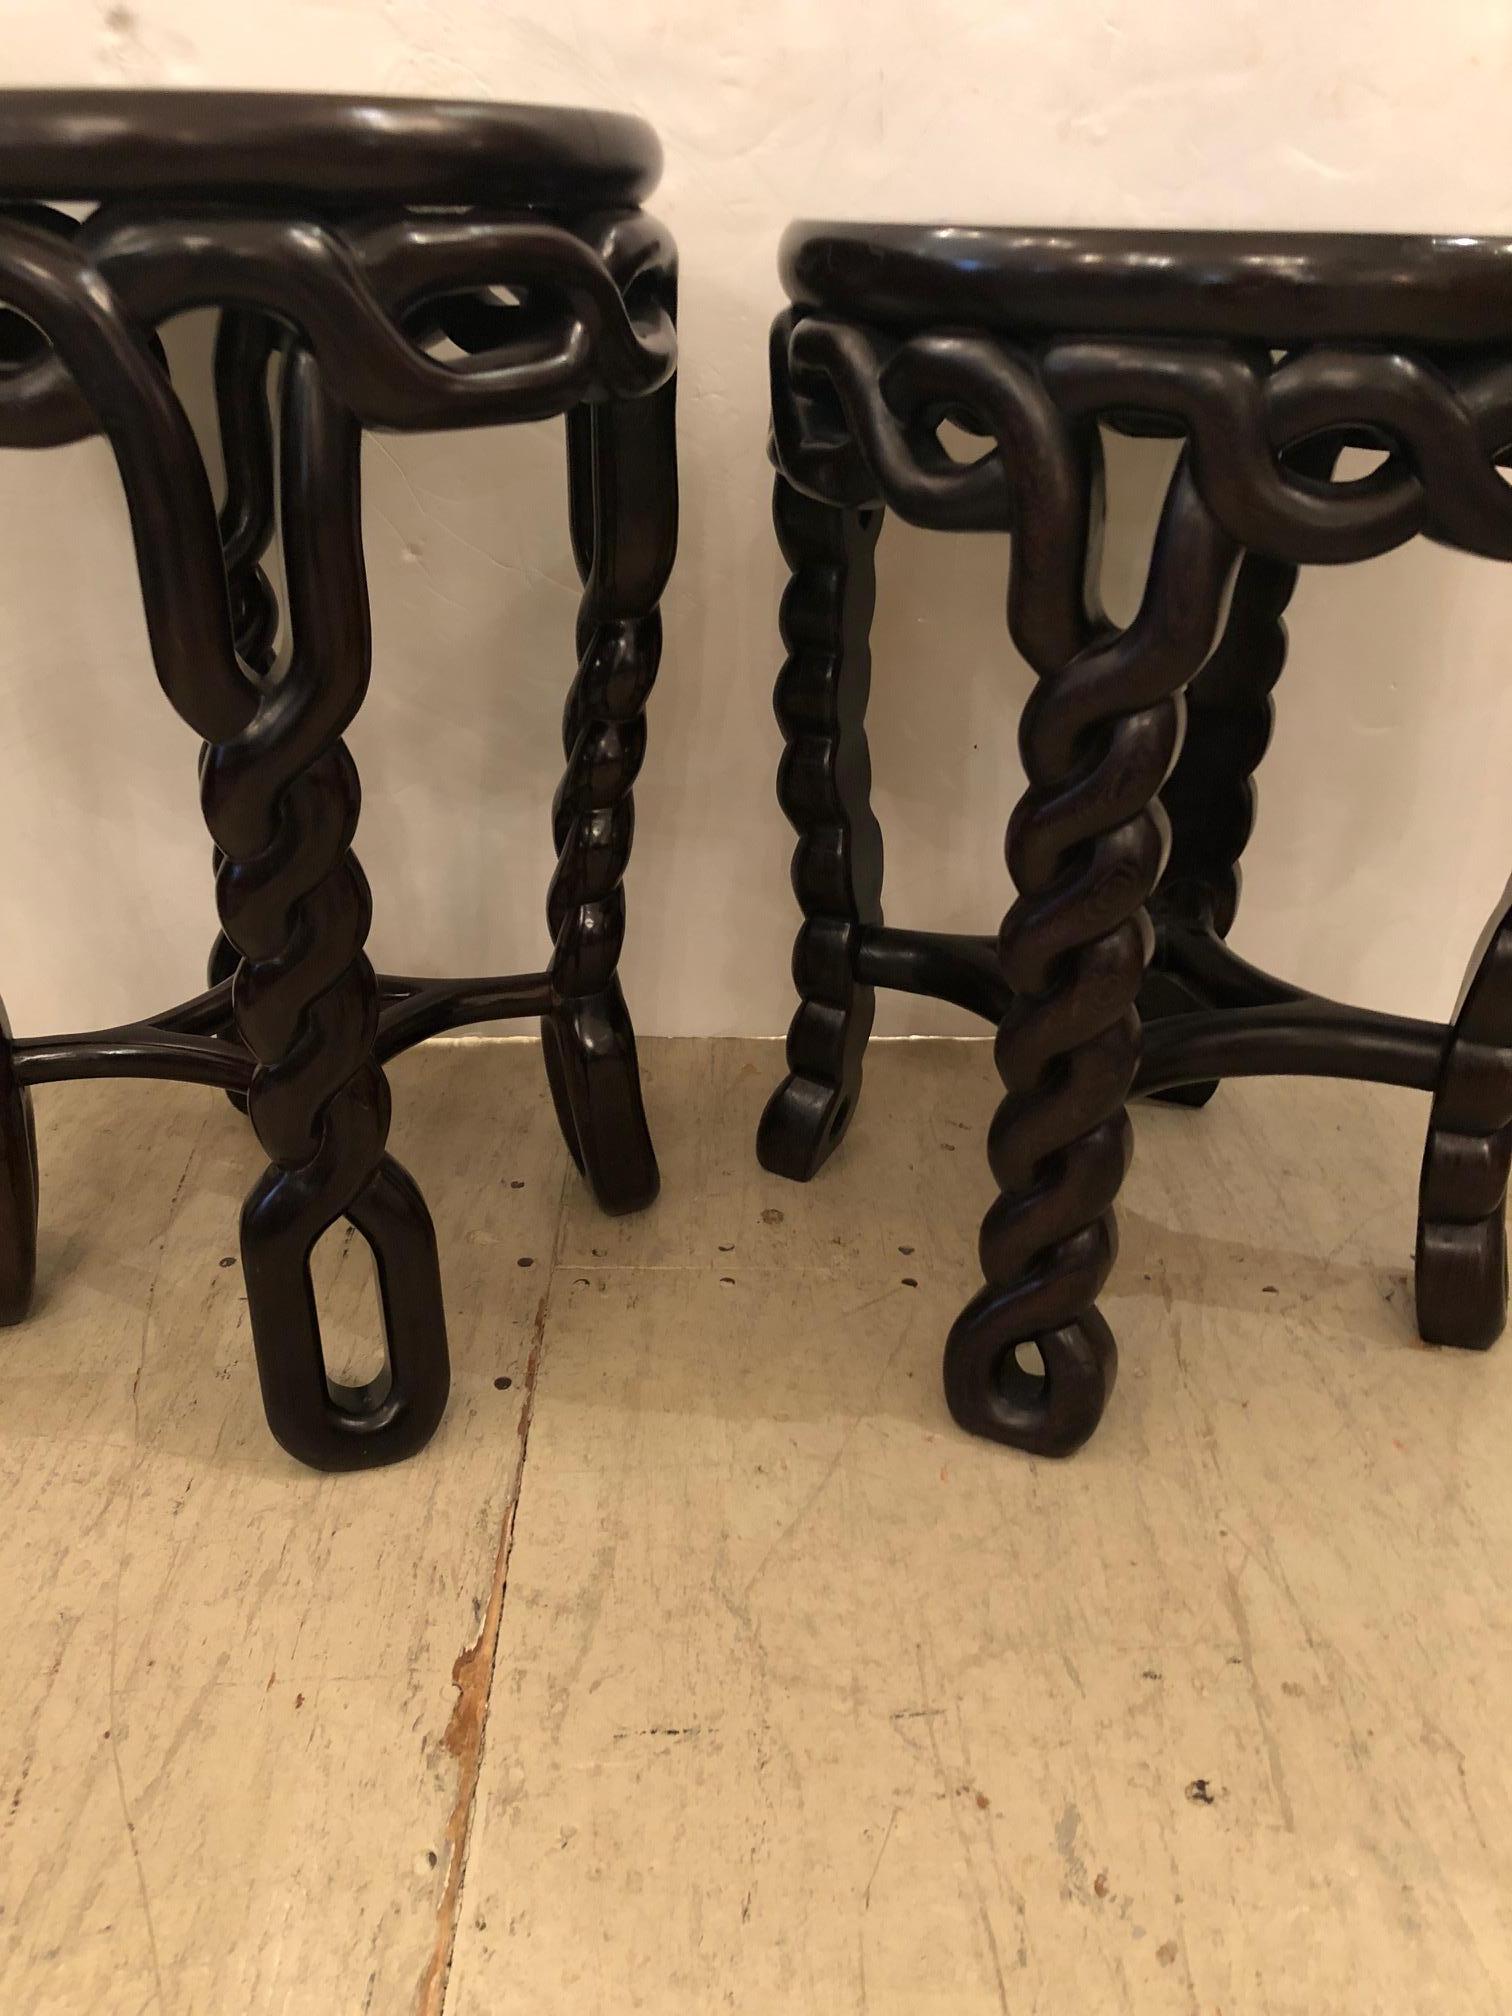 Une superbe paire de tables rondes d'appoint ou de bout en bois exotique avec des pieds à motif de corde tressée légèrement différents, une table est plus haute d'un pouce - 18 pouces et 19 pouces. Ils sont en bois très solide, lourd et